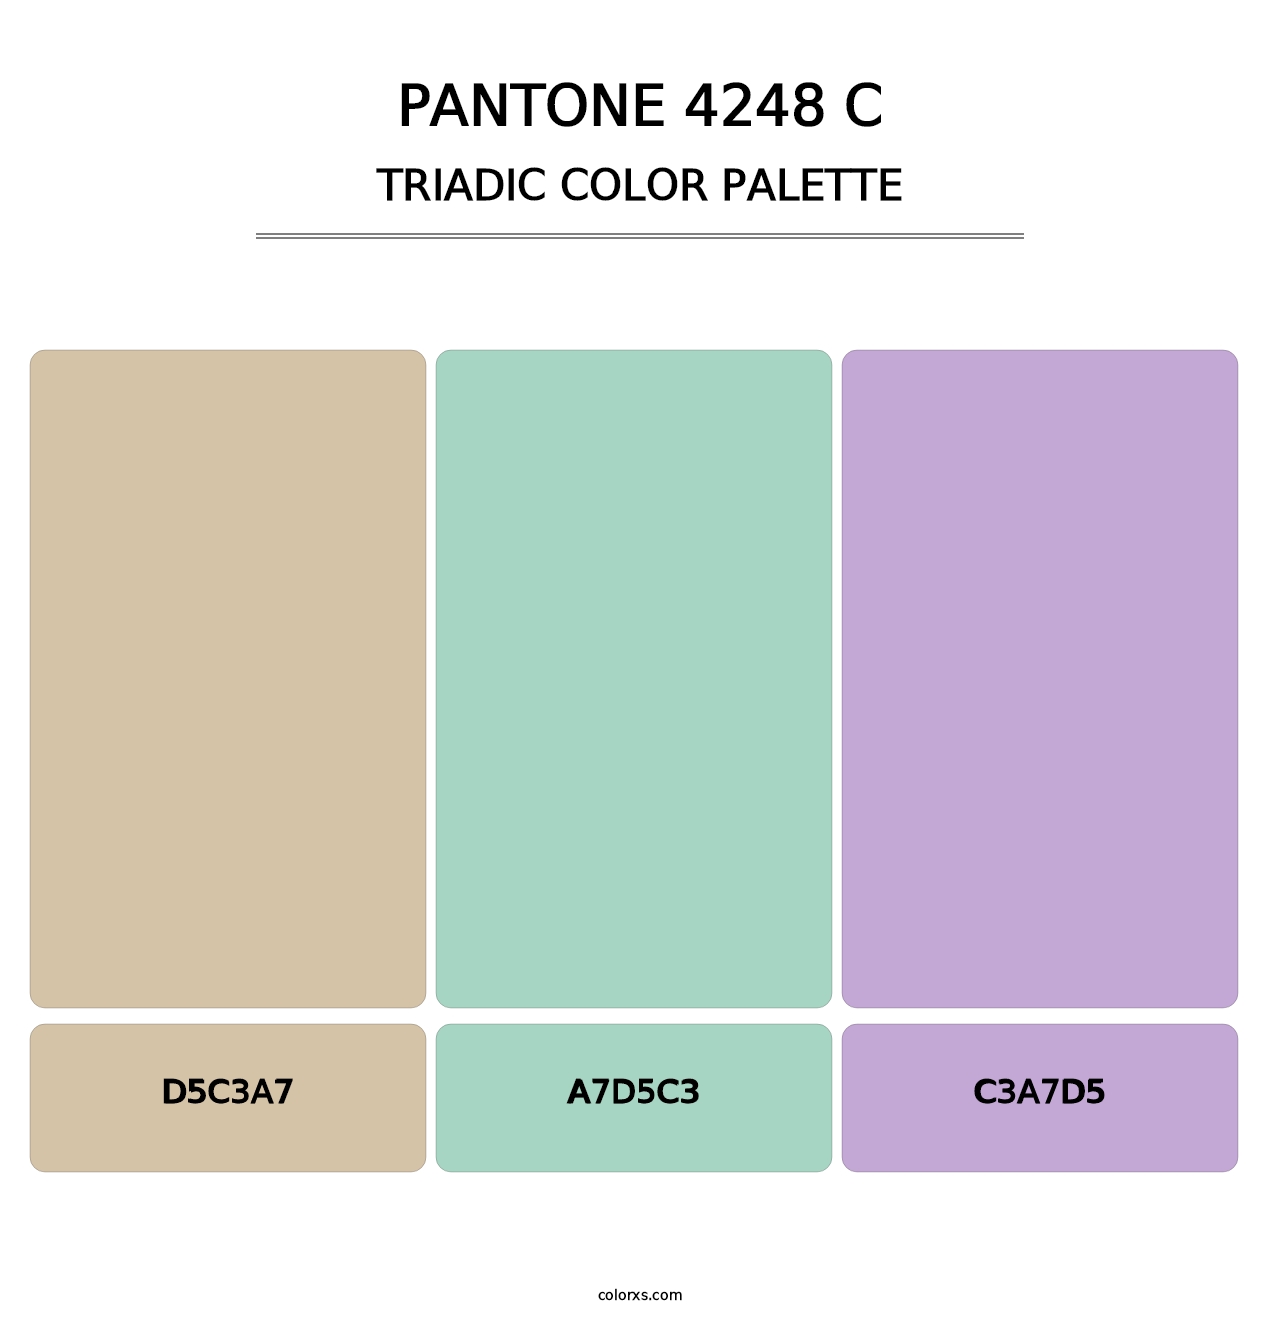 PANTONE 4248 C - Triadic Color Palette